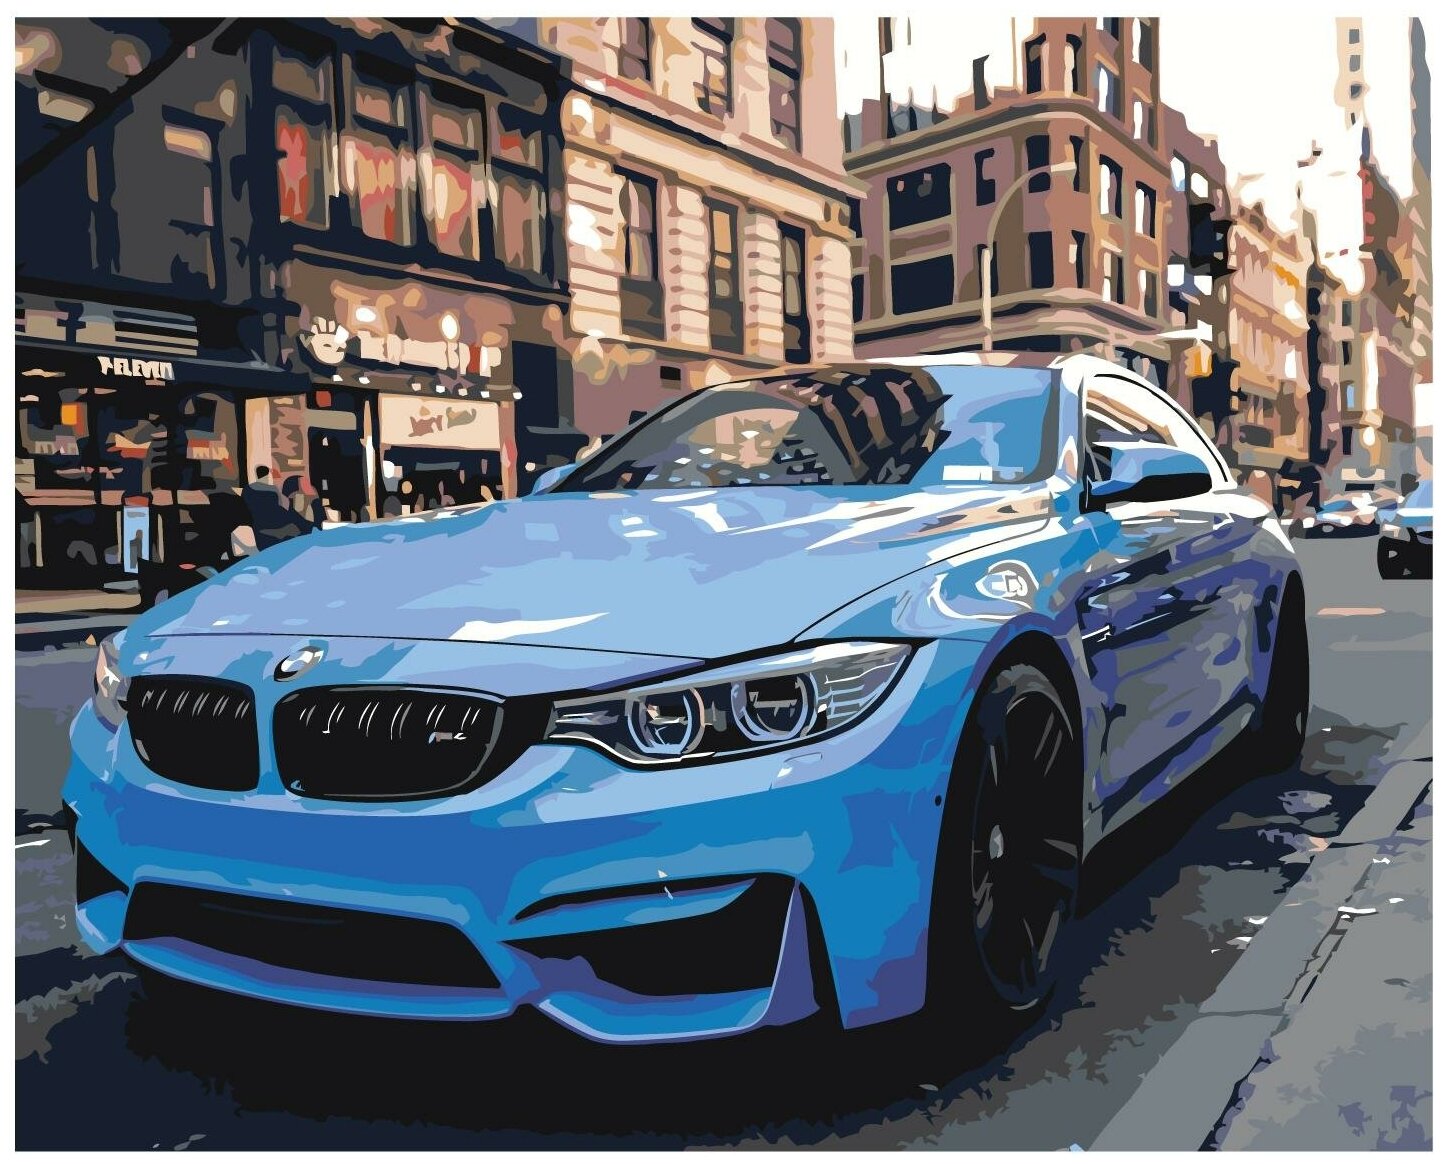 Спортивный автомобиль BMW M4 Раскраска картина по номерам на холсте